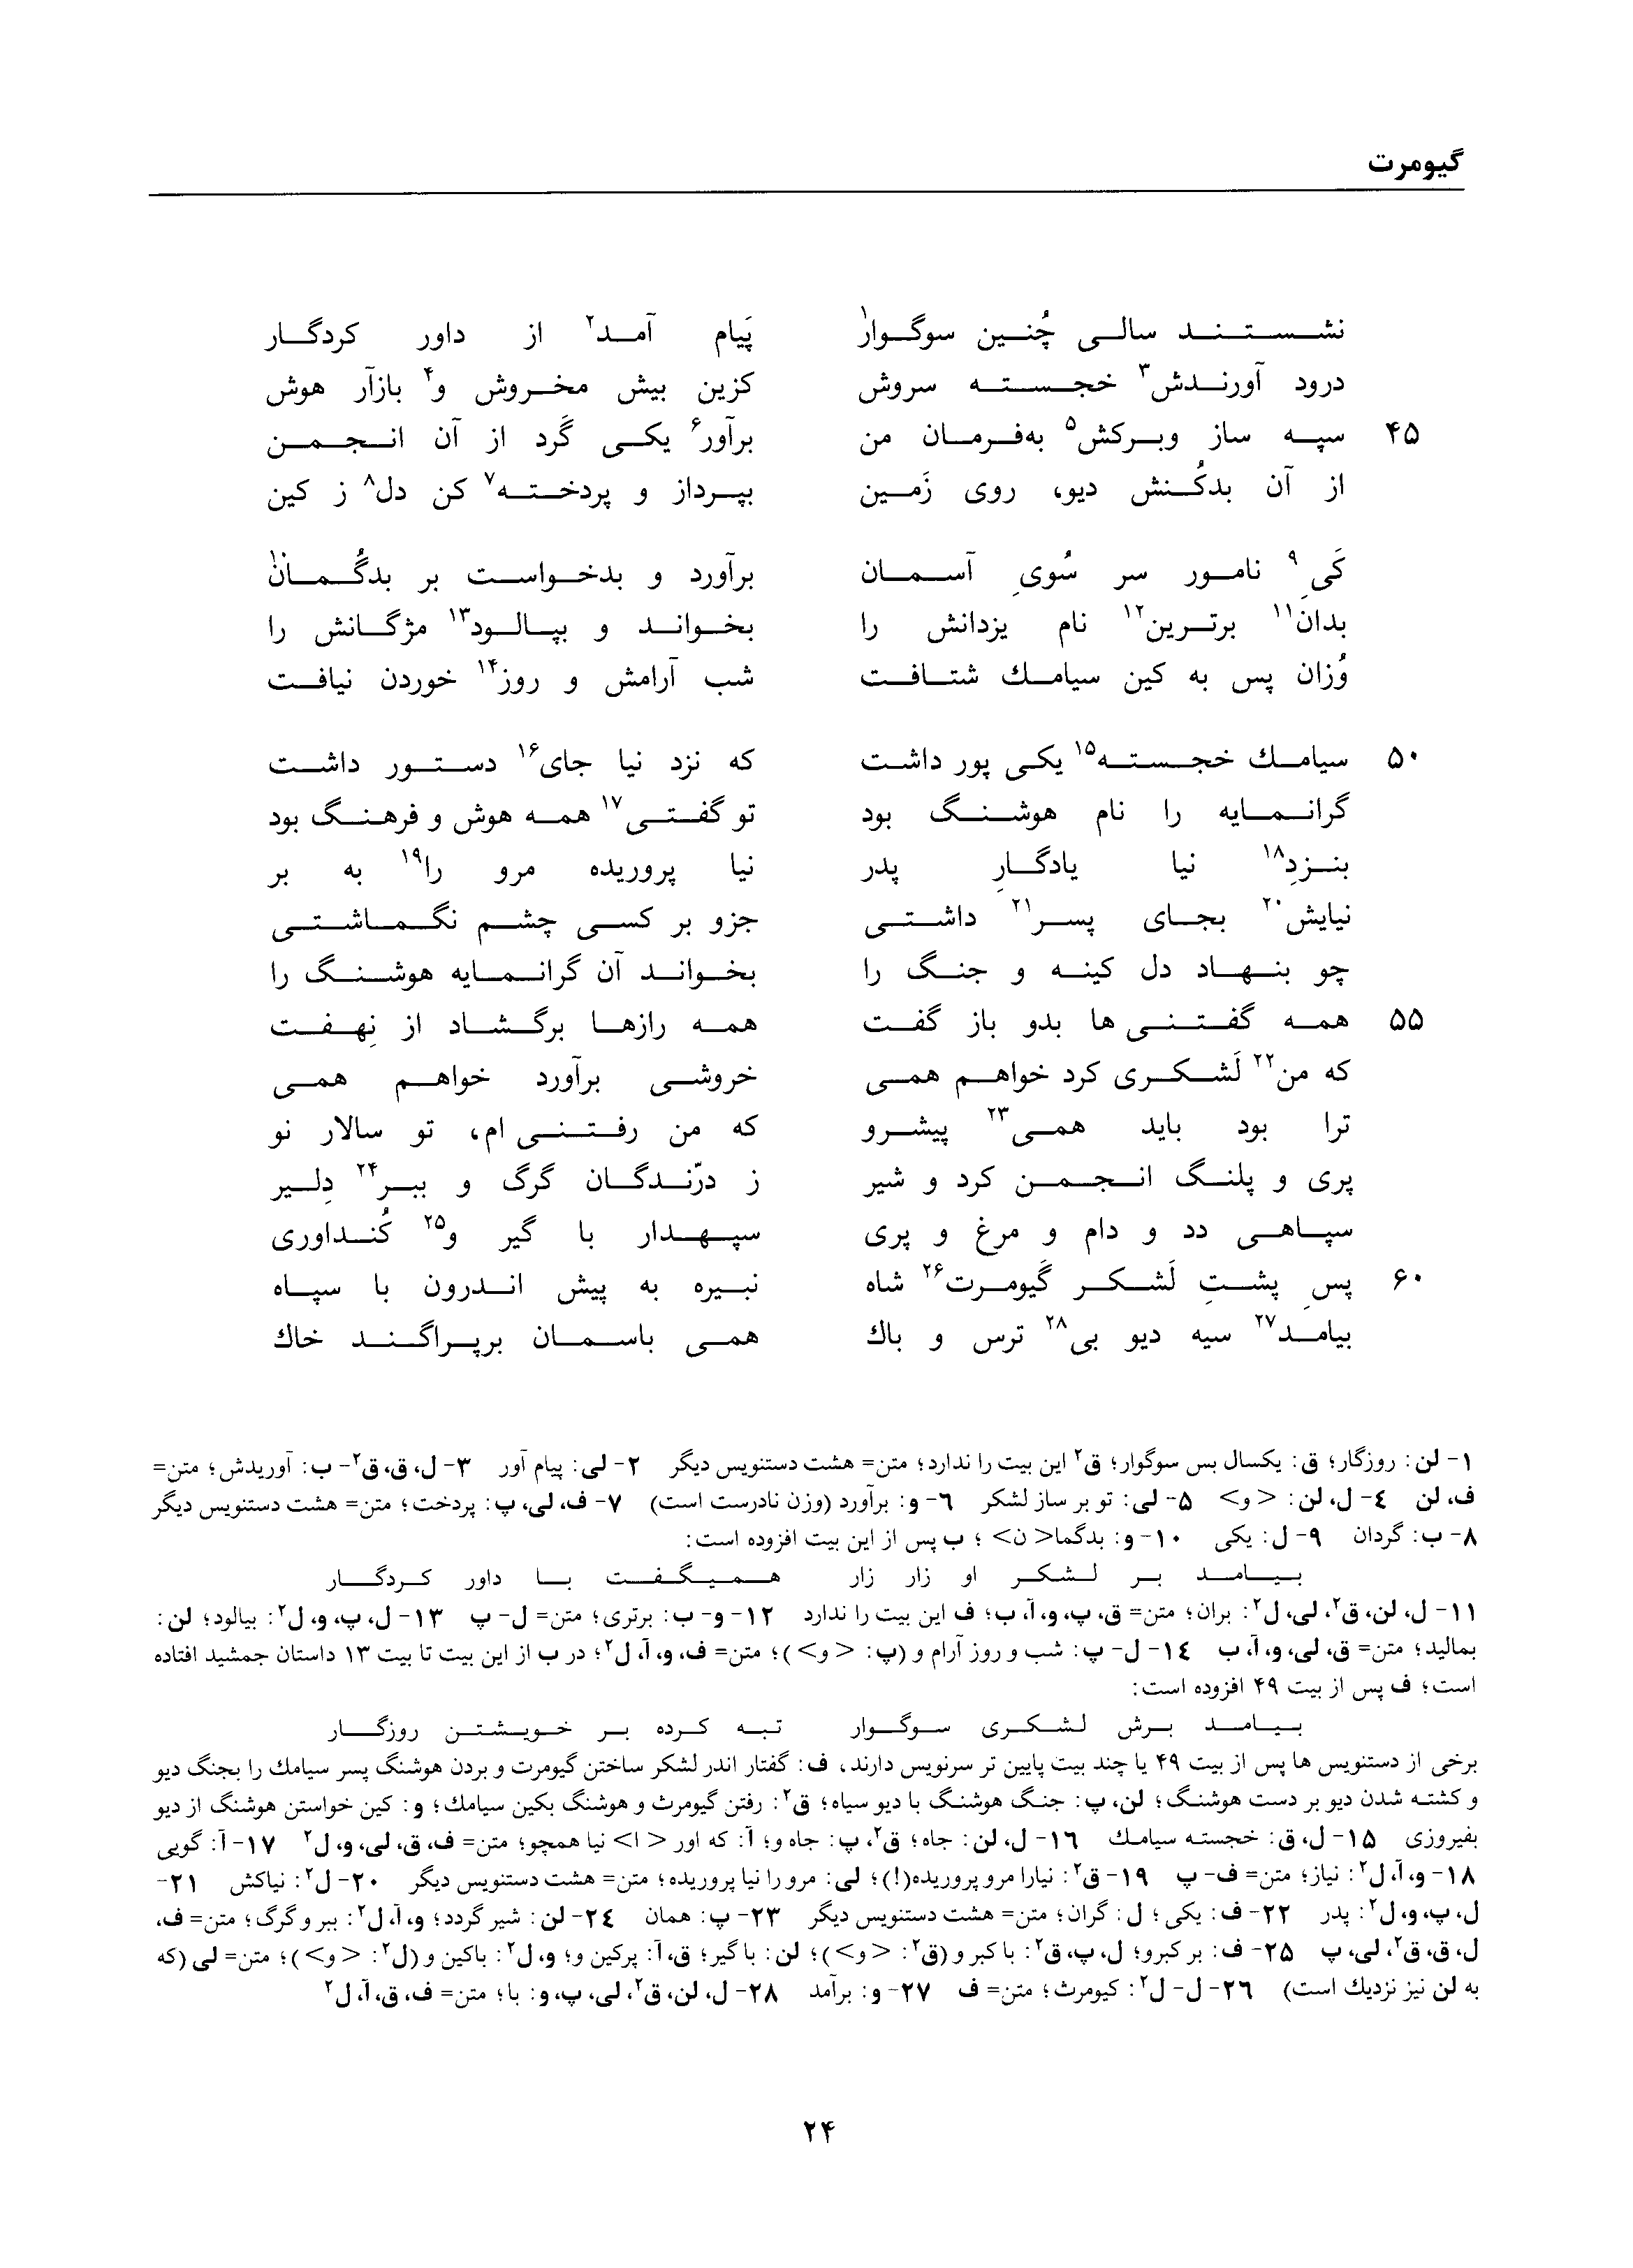 vol. 1, p. 24